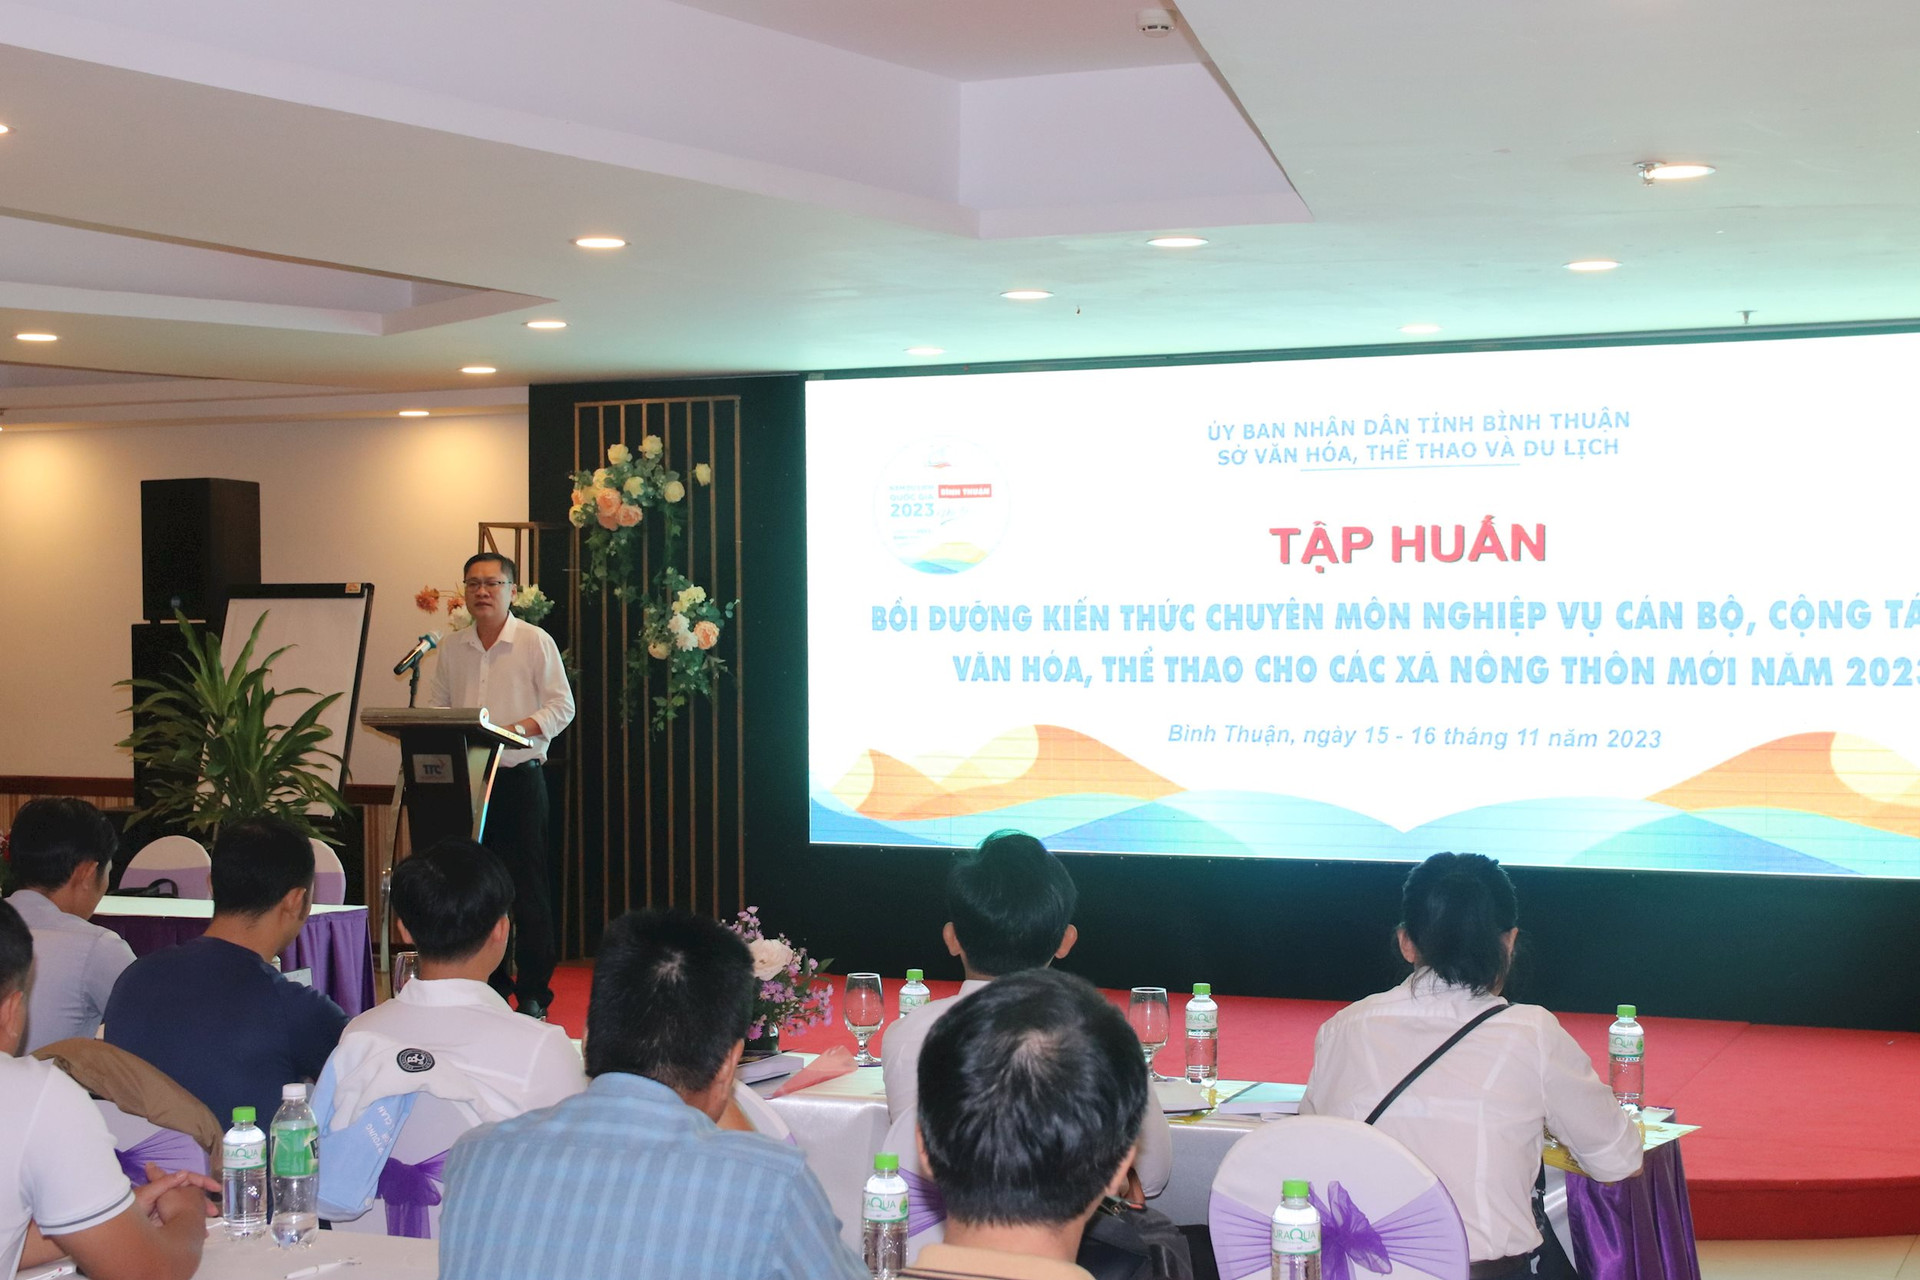 Bình Thuận: Mời giảng viên trường đại học ở TP.HCM về bồi dưỡng kiến thức cho cán bộ các xã nông thôn mới - Ảnh 1.